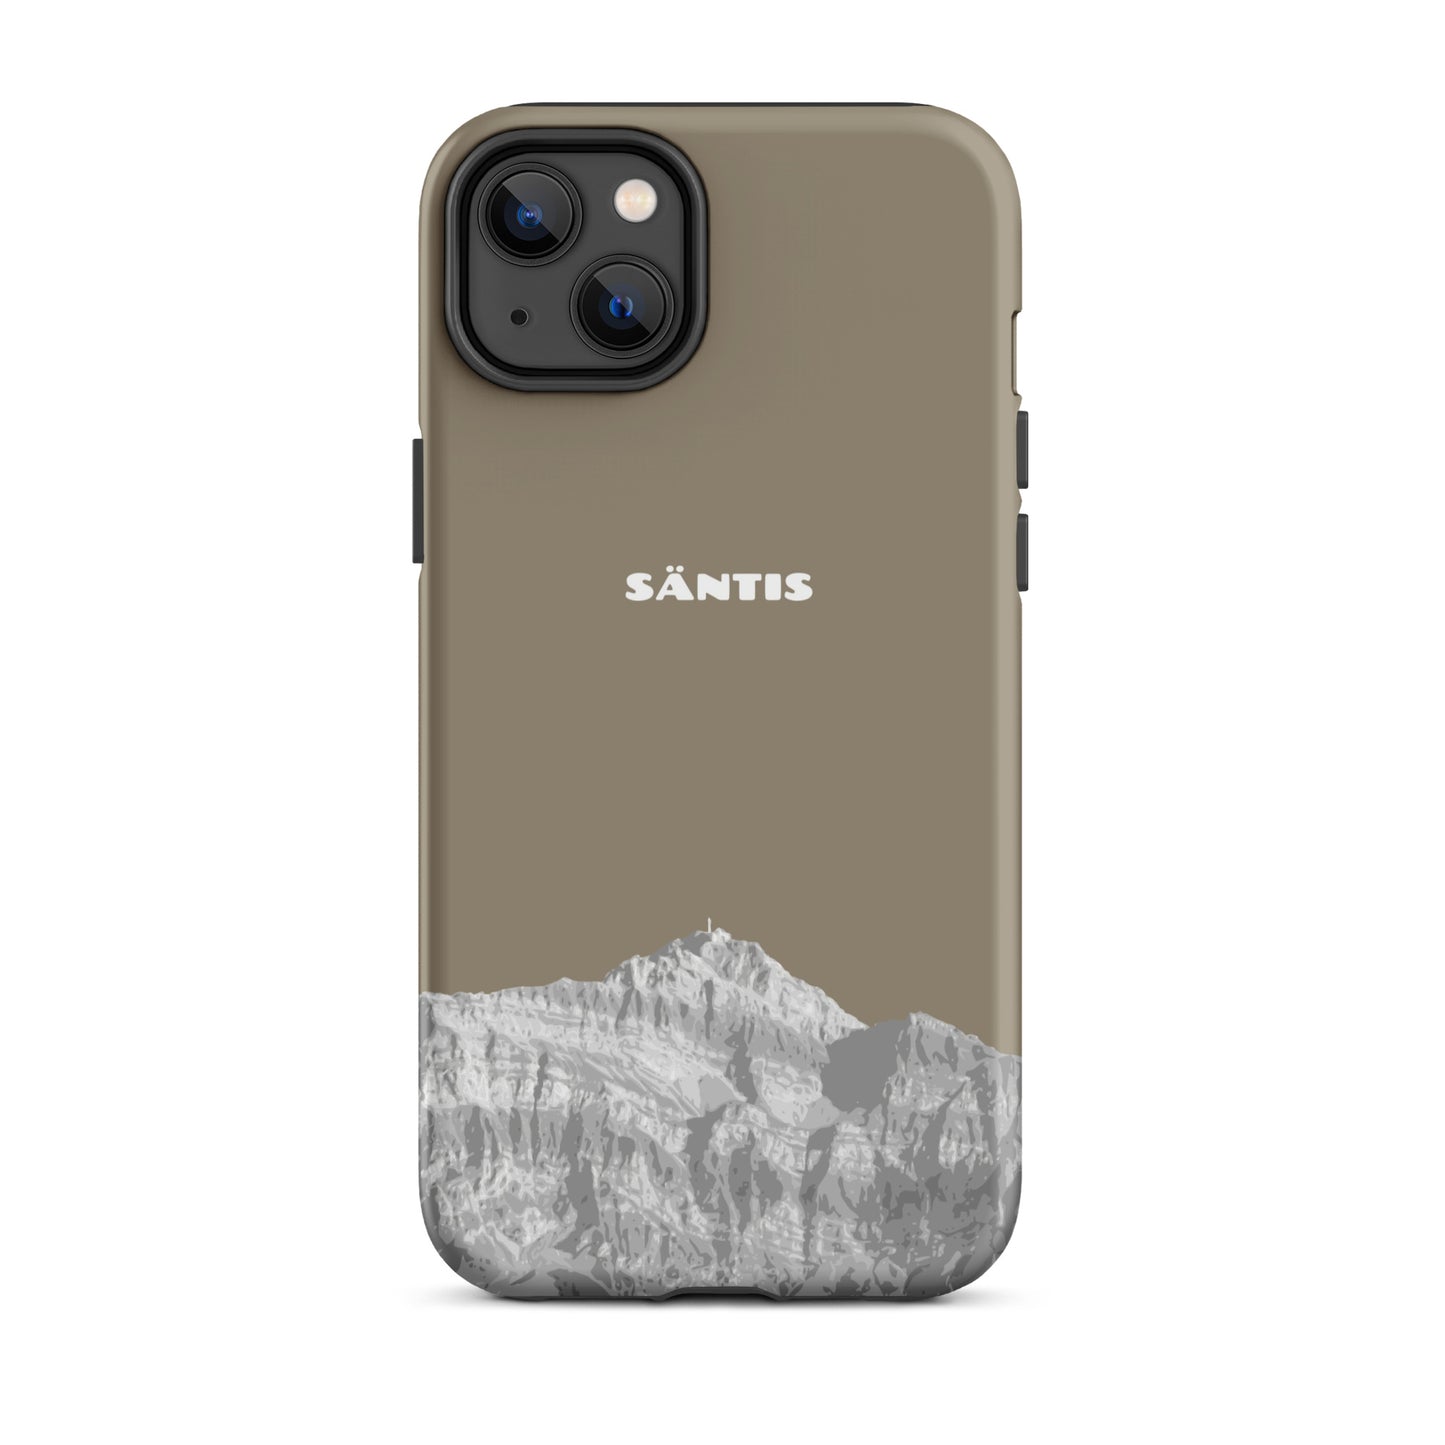 Hülle für das iPhone 14 Plus von Apple in der Farbe Graubraun, dass den Säntis im Alpstein zeigt.